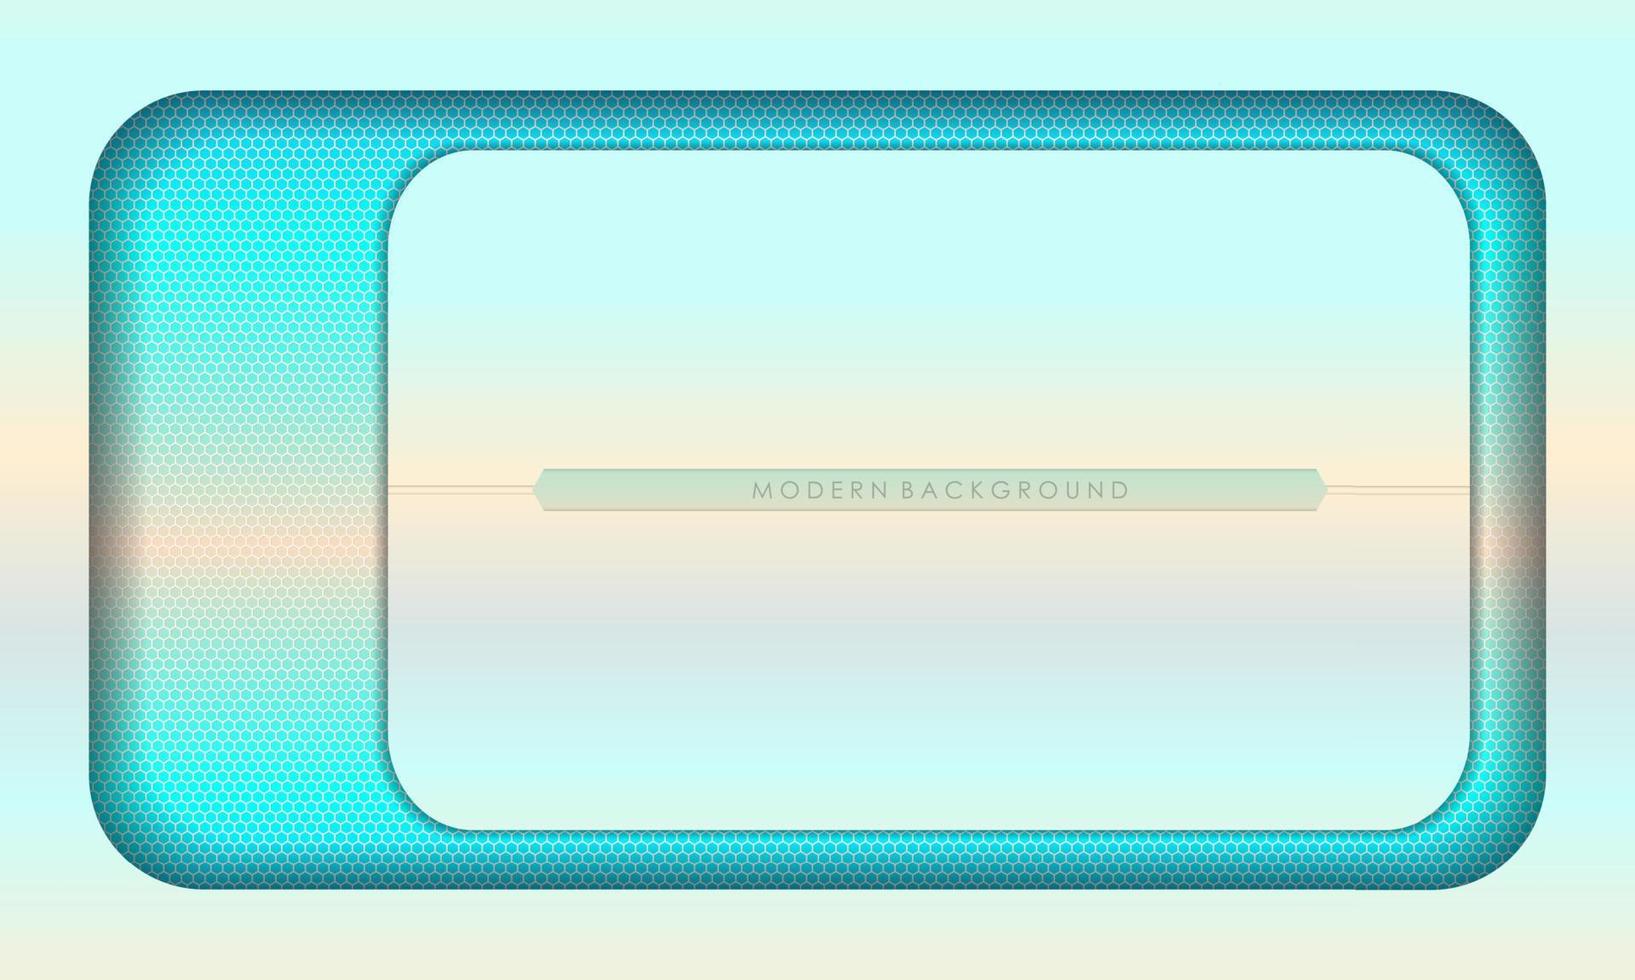 gradientes conceito de fundo moderno branco e azul vetor